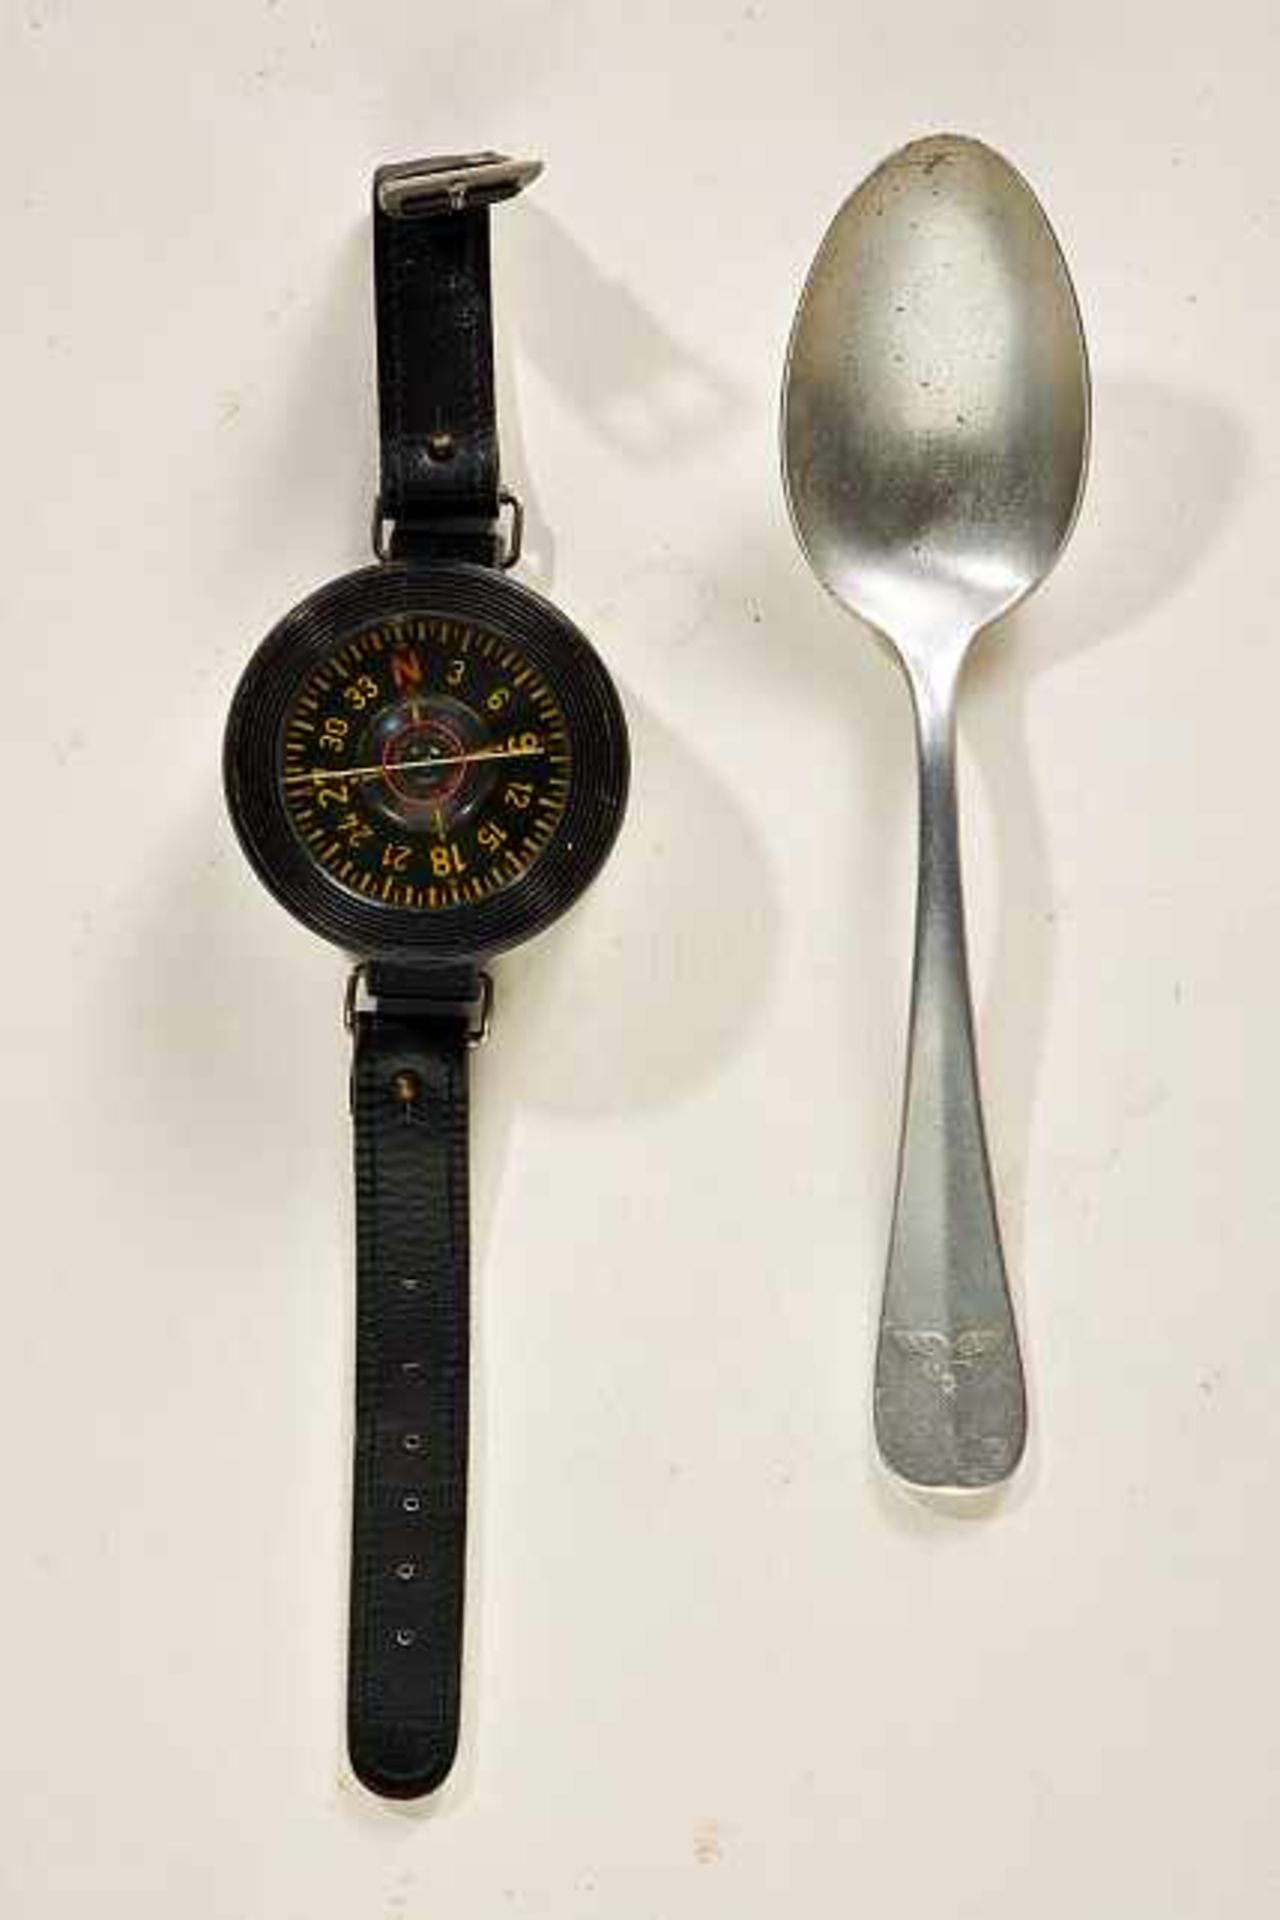 Deutsches Reich 1933 - 1945 - Luftwaffe - Allgemein : Luftwaffe Wrist Compass.Compass shows no